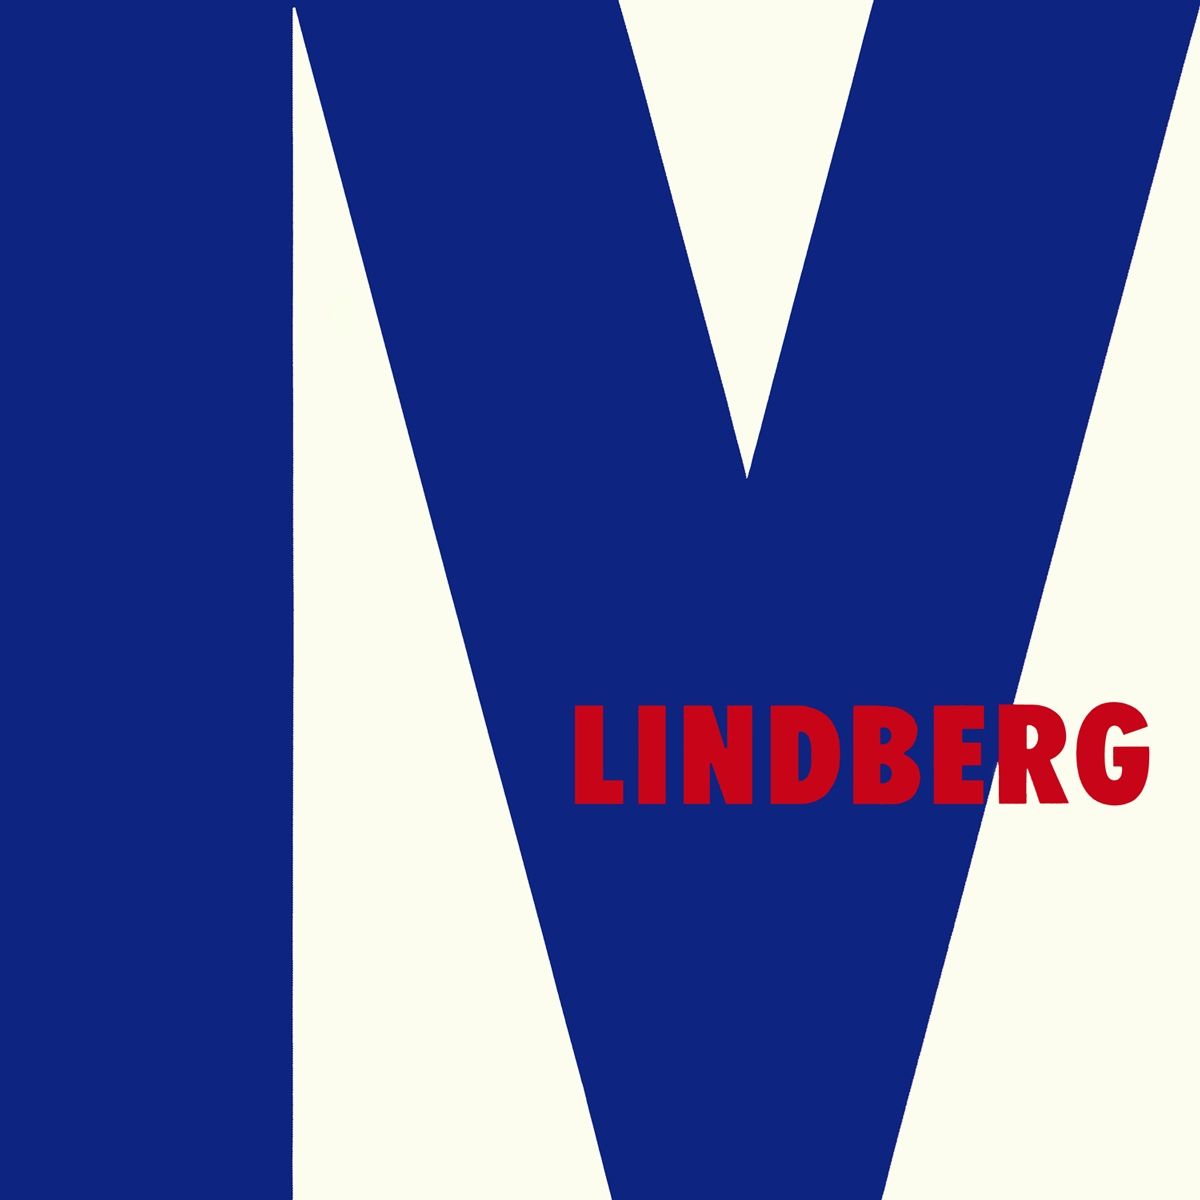 Imagem do álbum Lindberg IV do(a) artista Lindberg